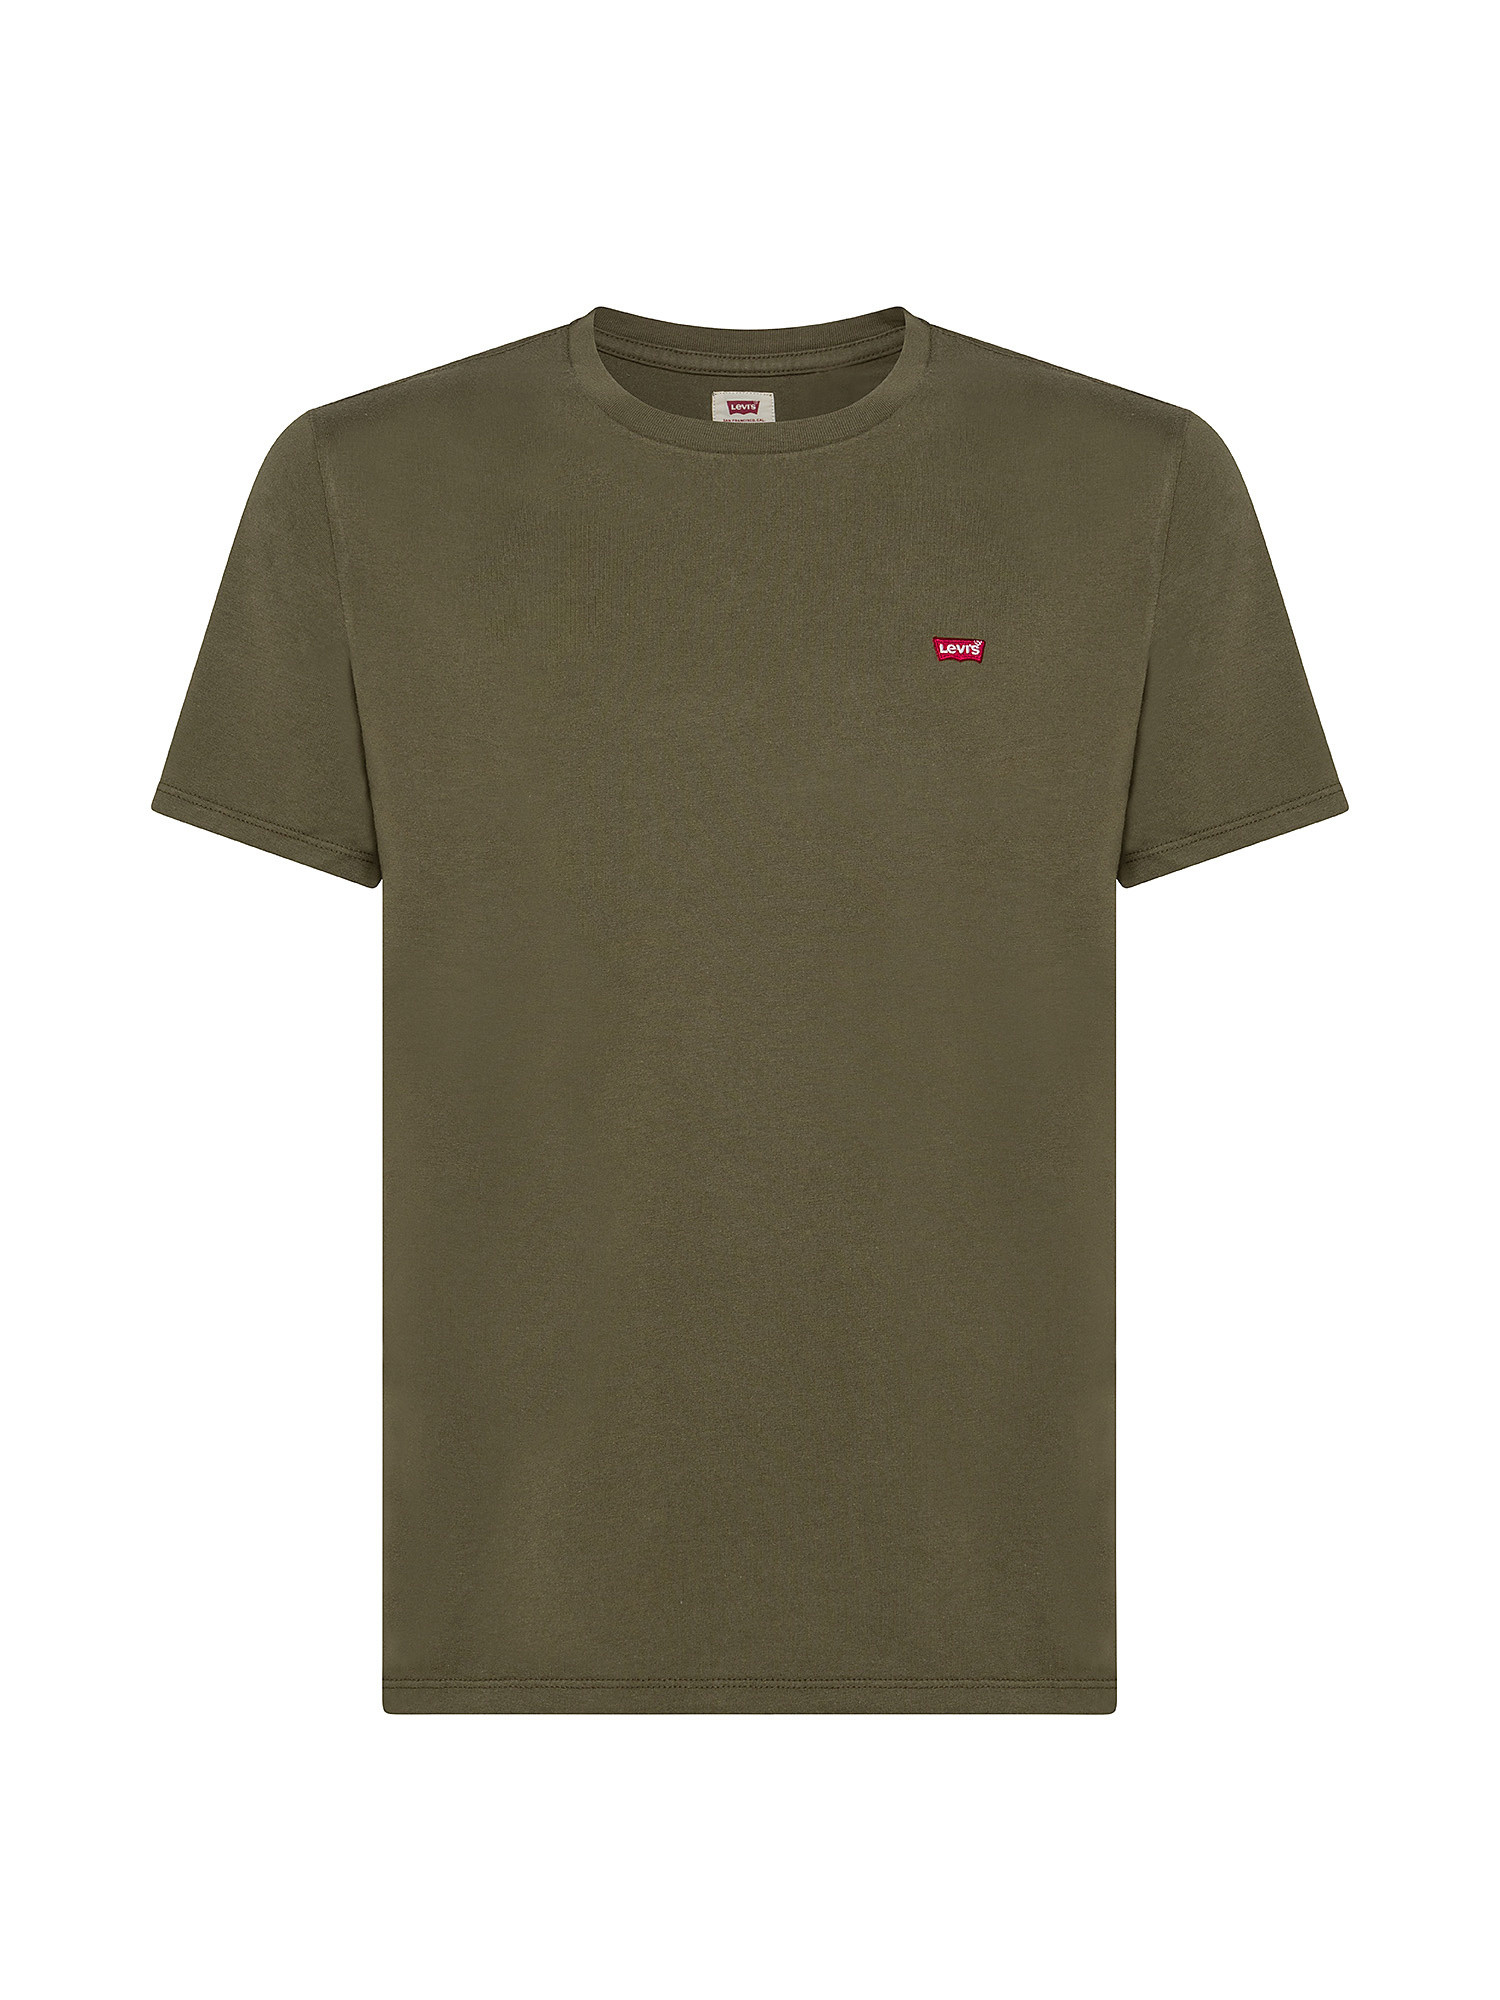 T-shirt Original con logo, Verde oliva, large image number 0